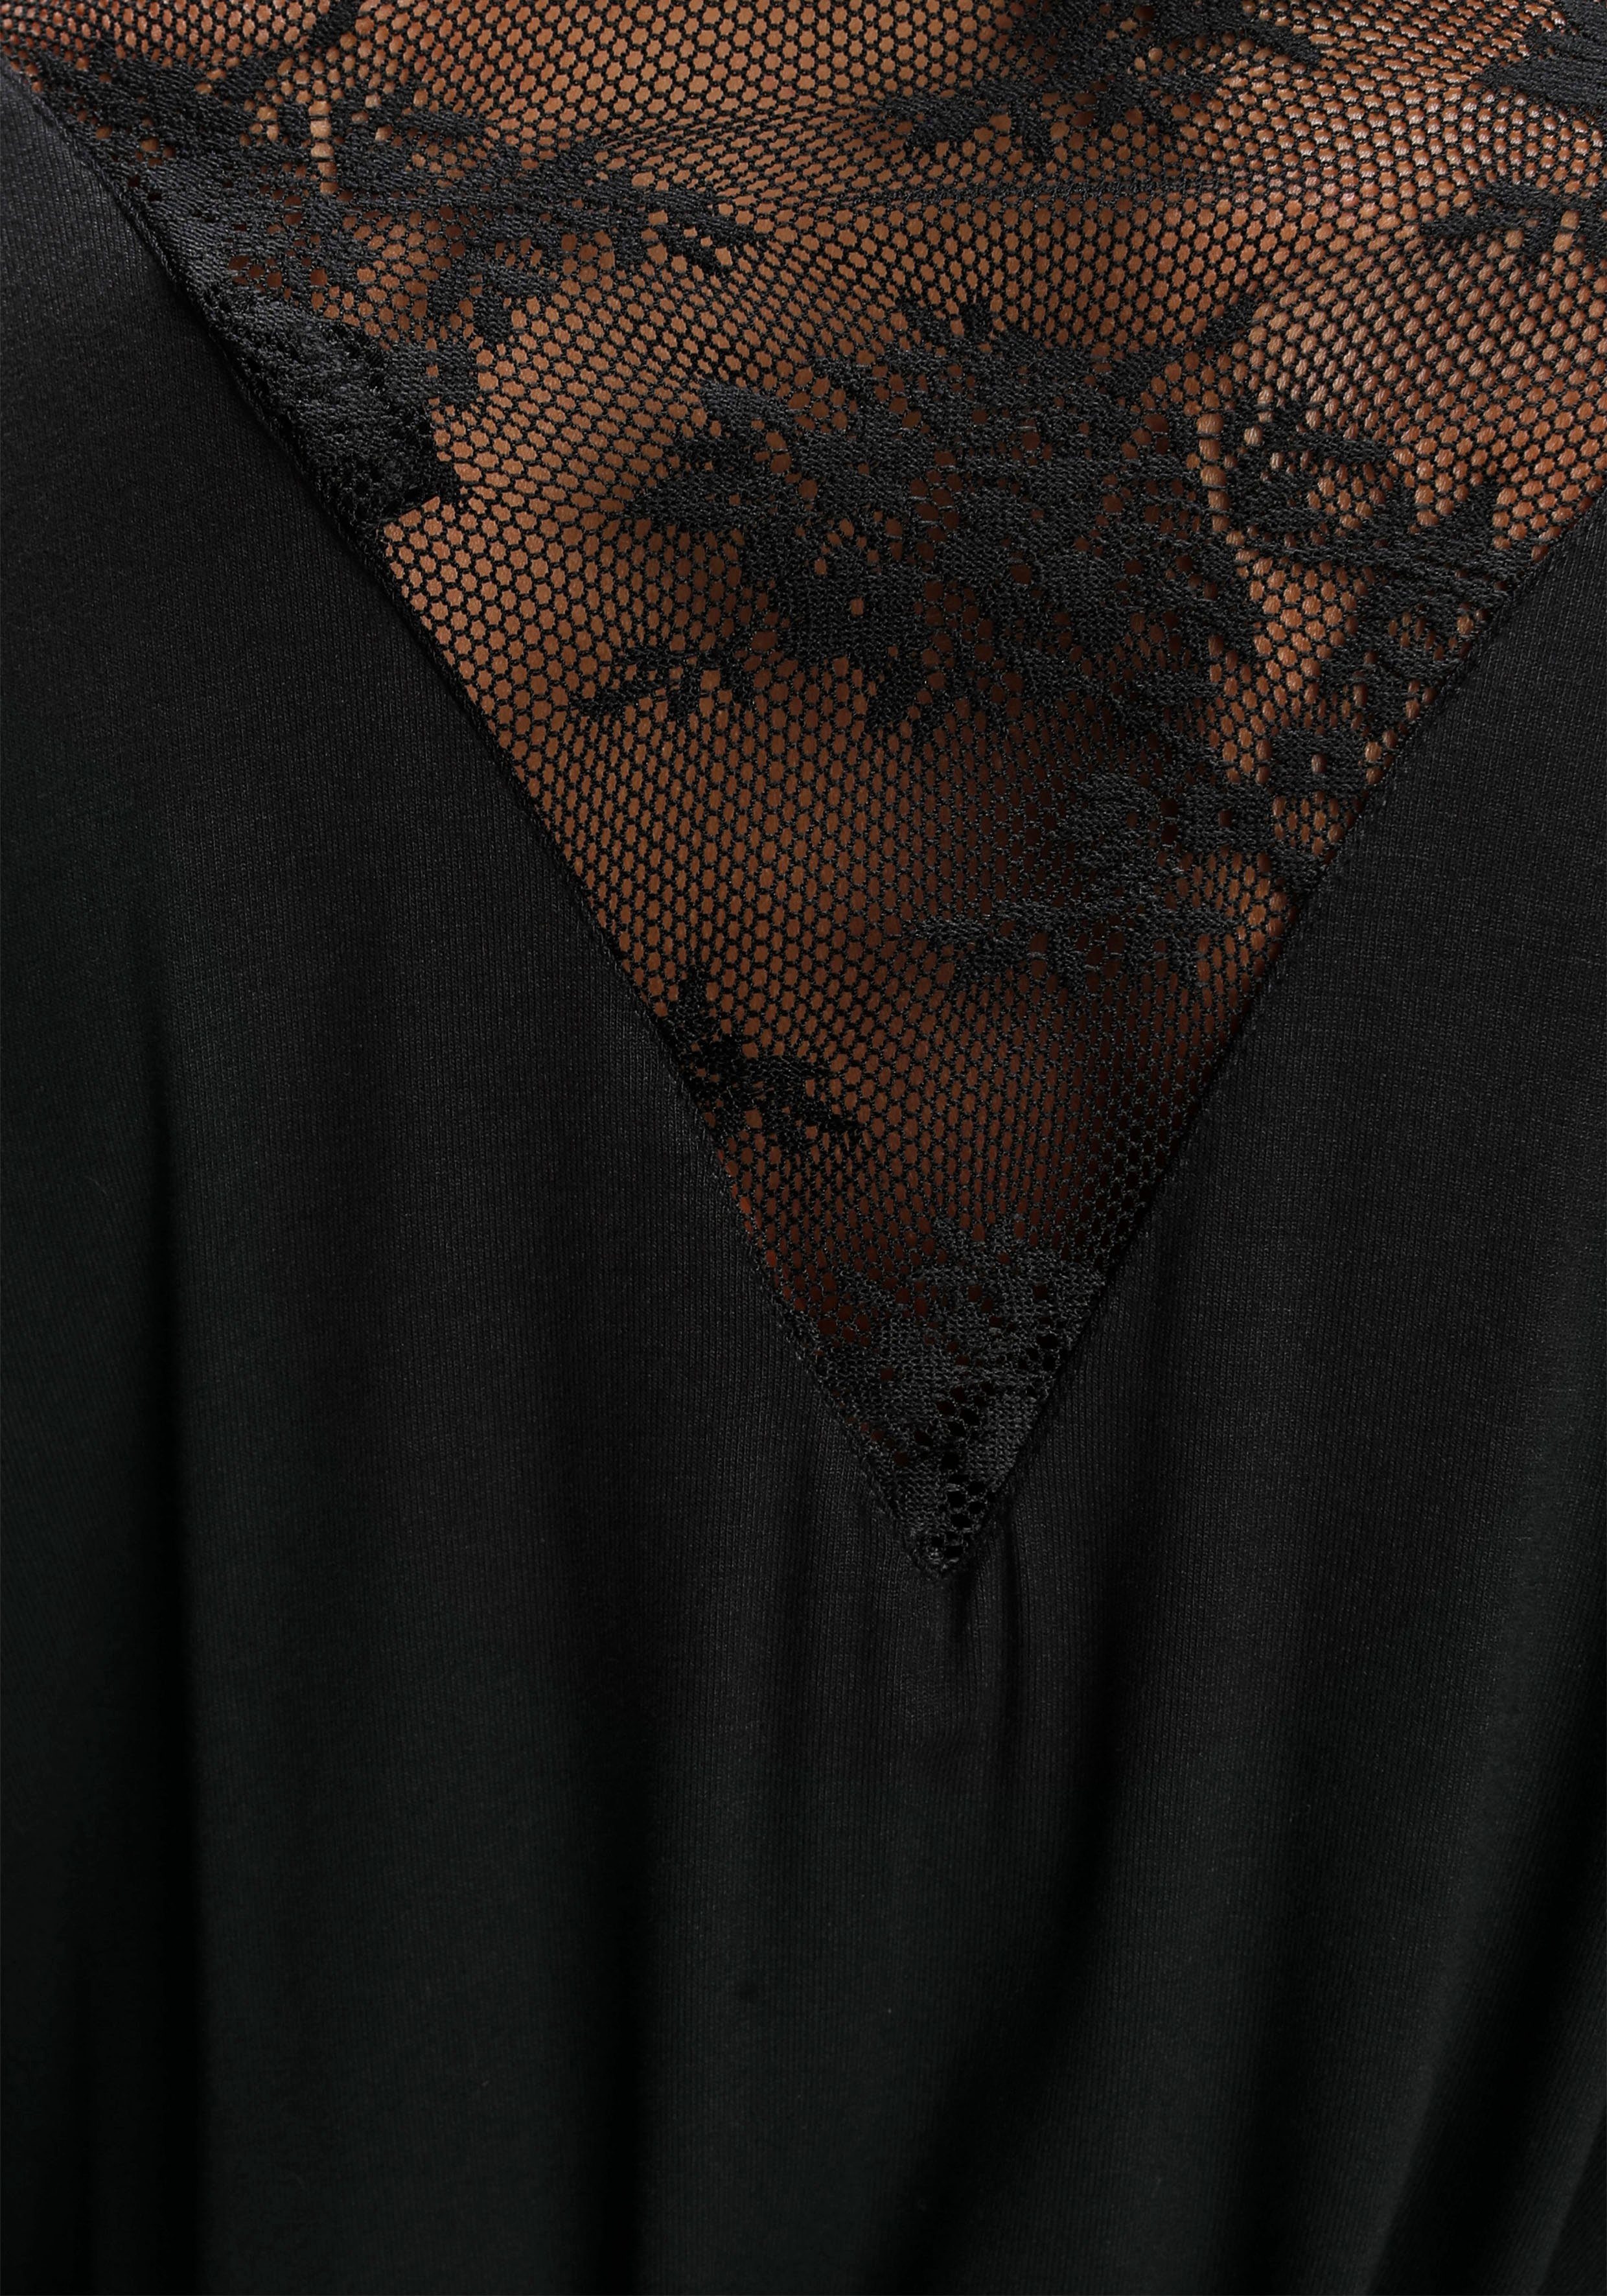 Viskose, Kimono, Spitzendetails mit schwarz schönen Bruno Banani Kurzform,